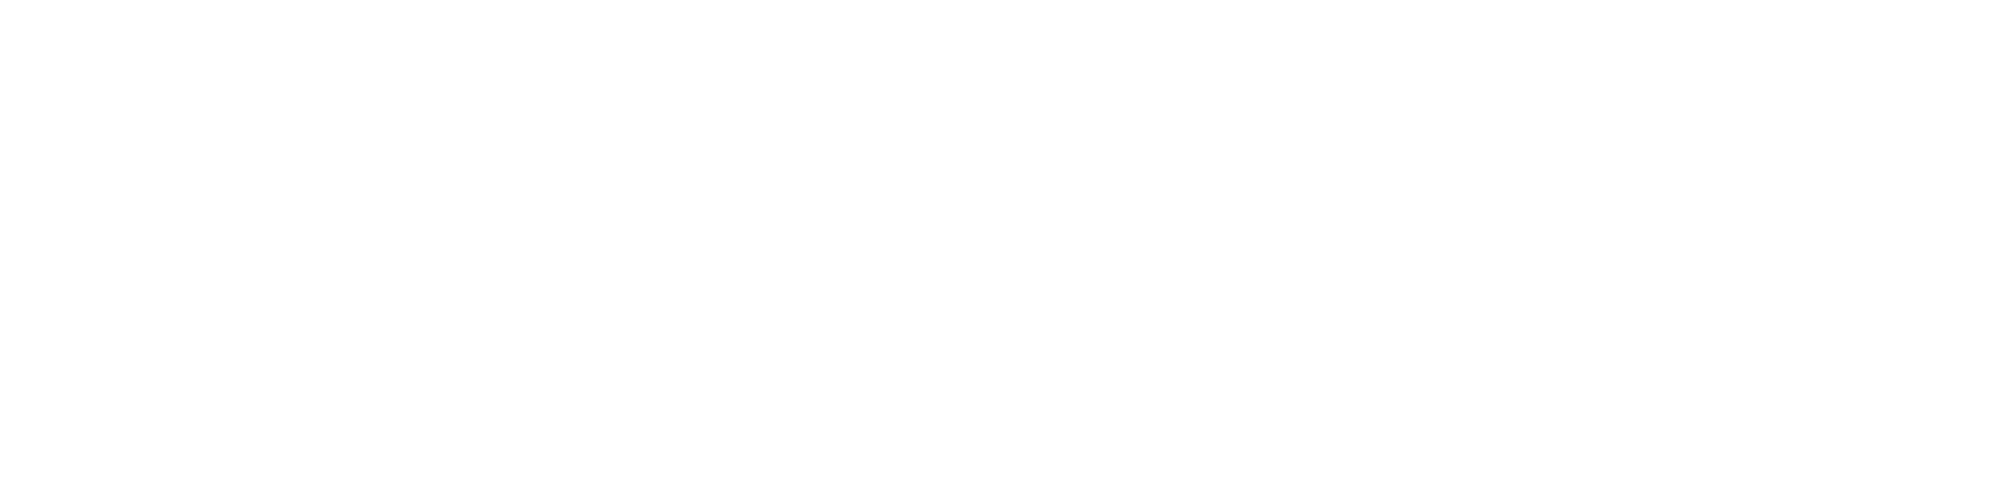 Reitsport Misch Onlineshop